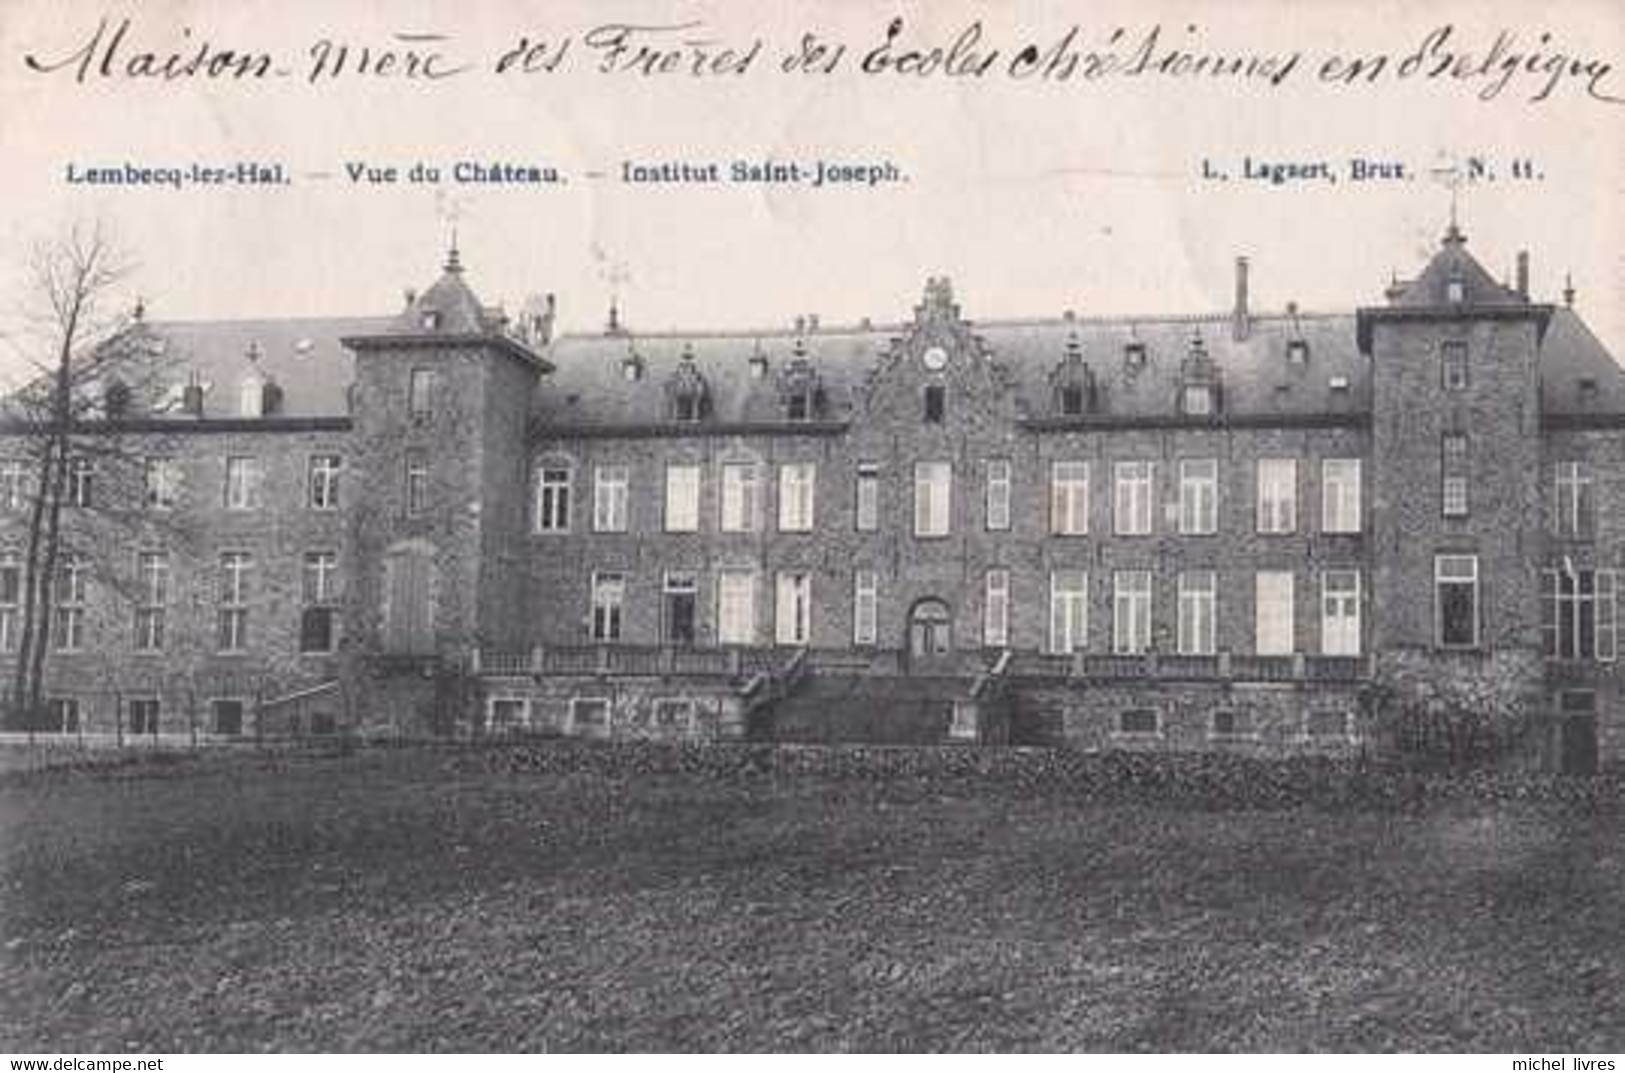 Lembeek - Lembecq Lez Hal - Vue Du Château - Institut Saint-Joseph - Halle - Circulé En 1908 - TBE - Halle